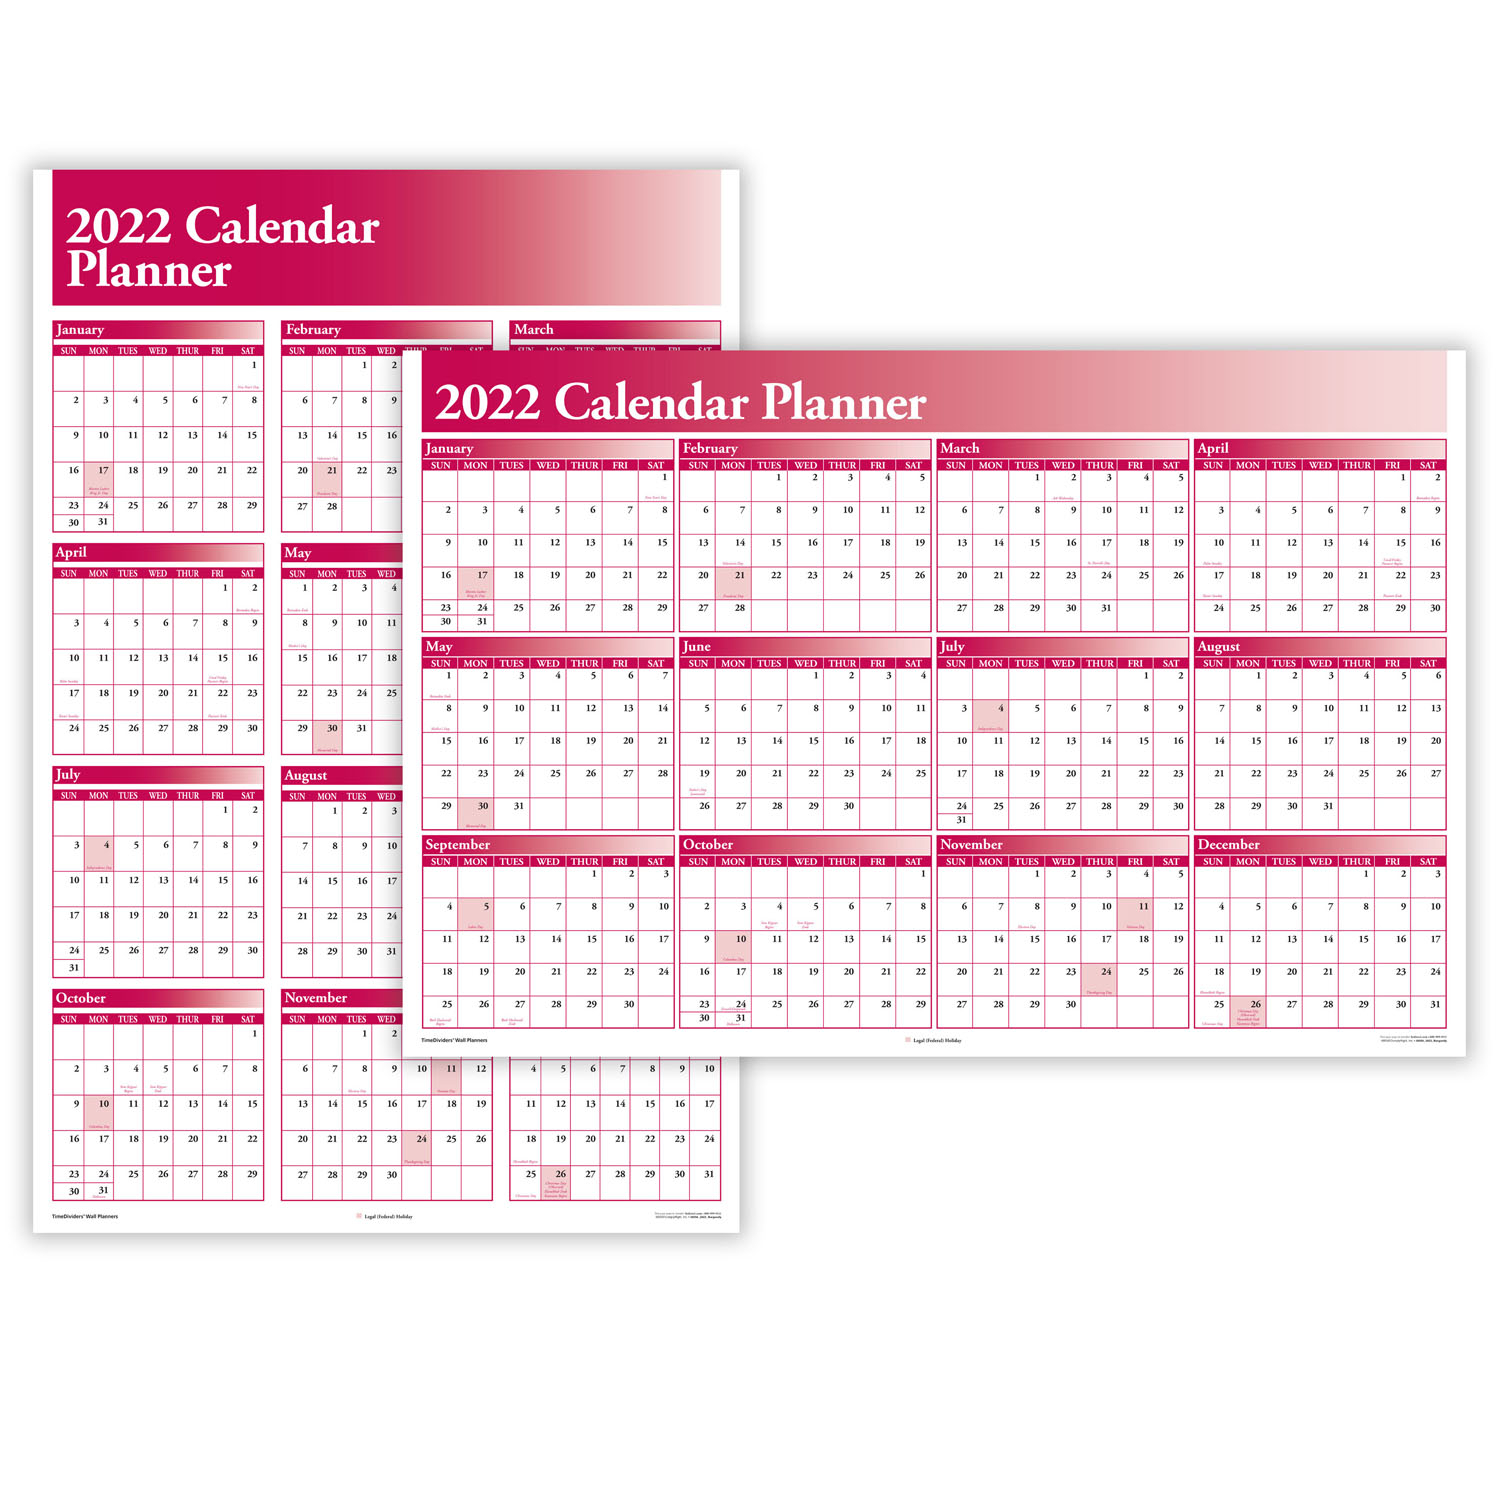 Yearly Calendar Planner | Planning Calendar | Hrdirect regarding Get Free Employee Absentee Calendar 2022 Calendar